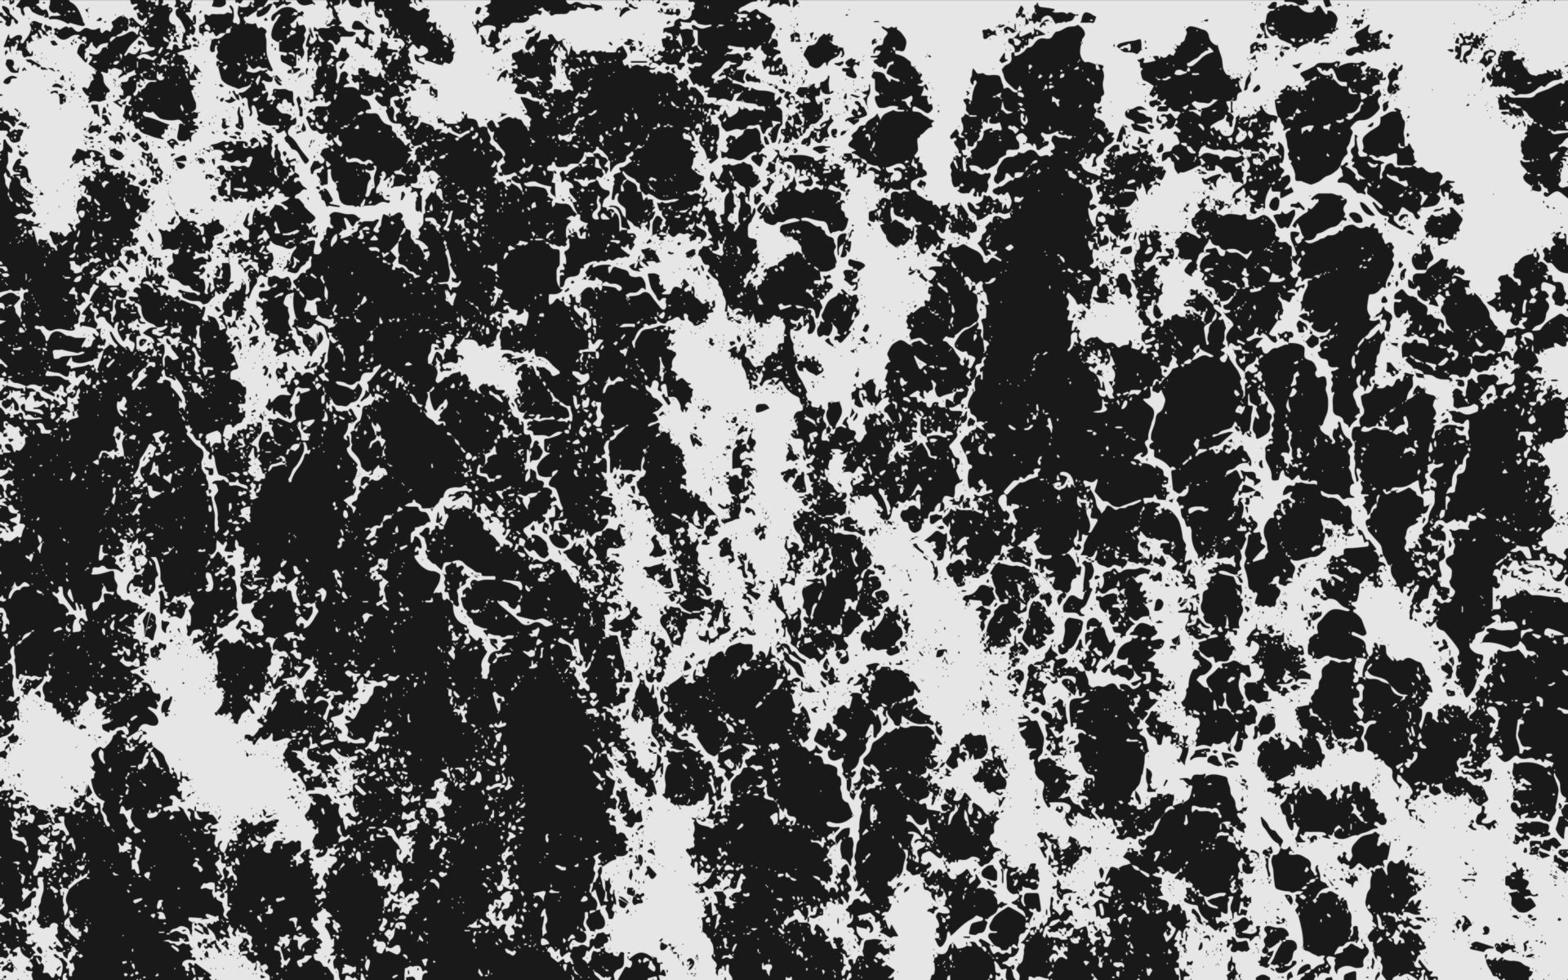 repig grunge urban bakgrund textur vektor. damm täcka över ångest kornig grungy effekt. bedrövad bakgrund vektor illustration. isolerat vit på svart bakgrund